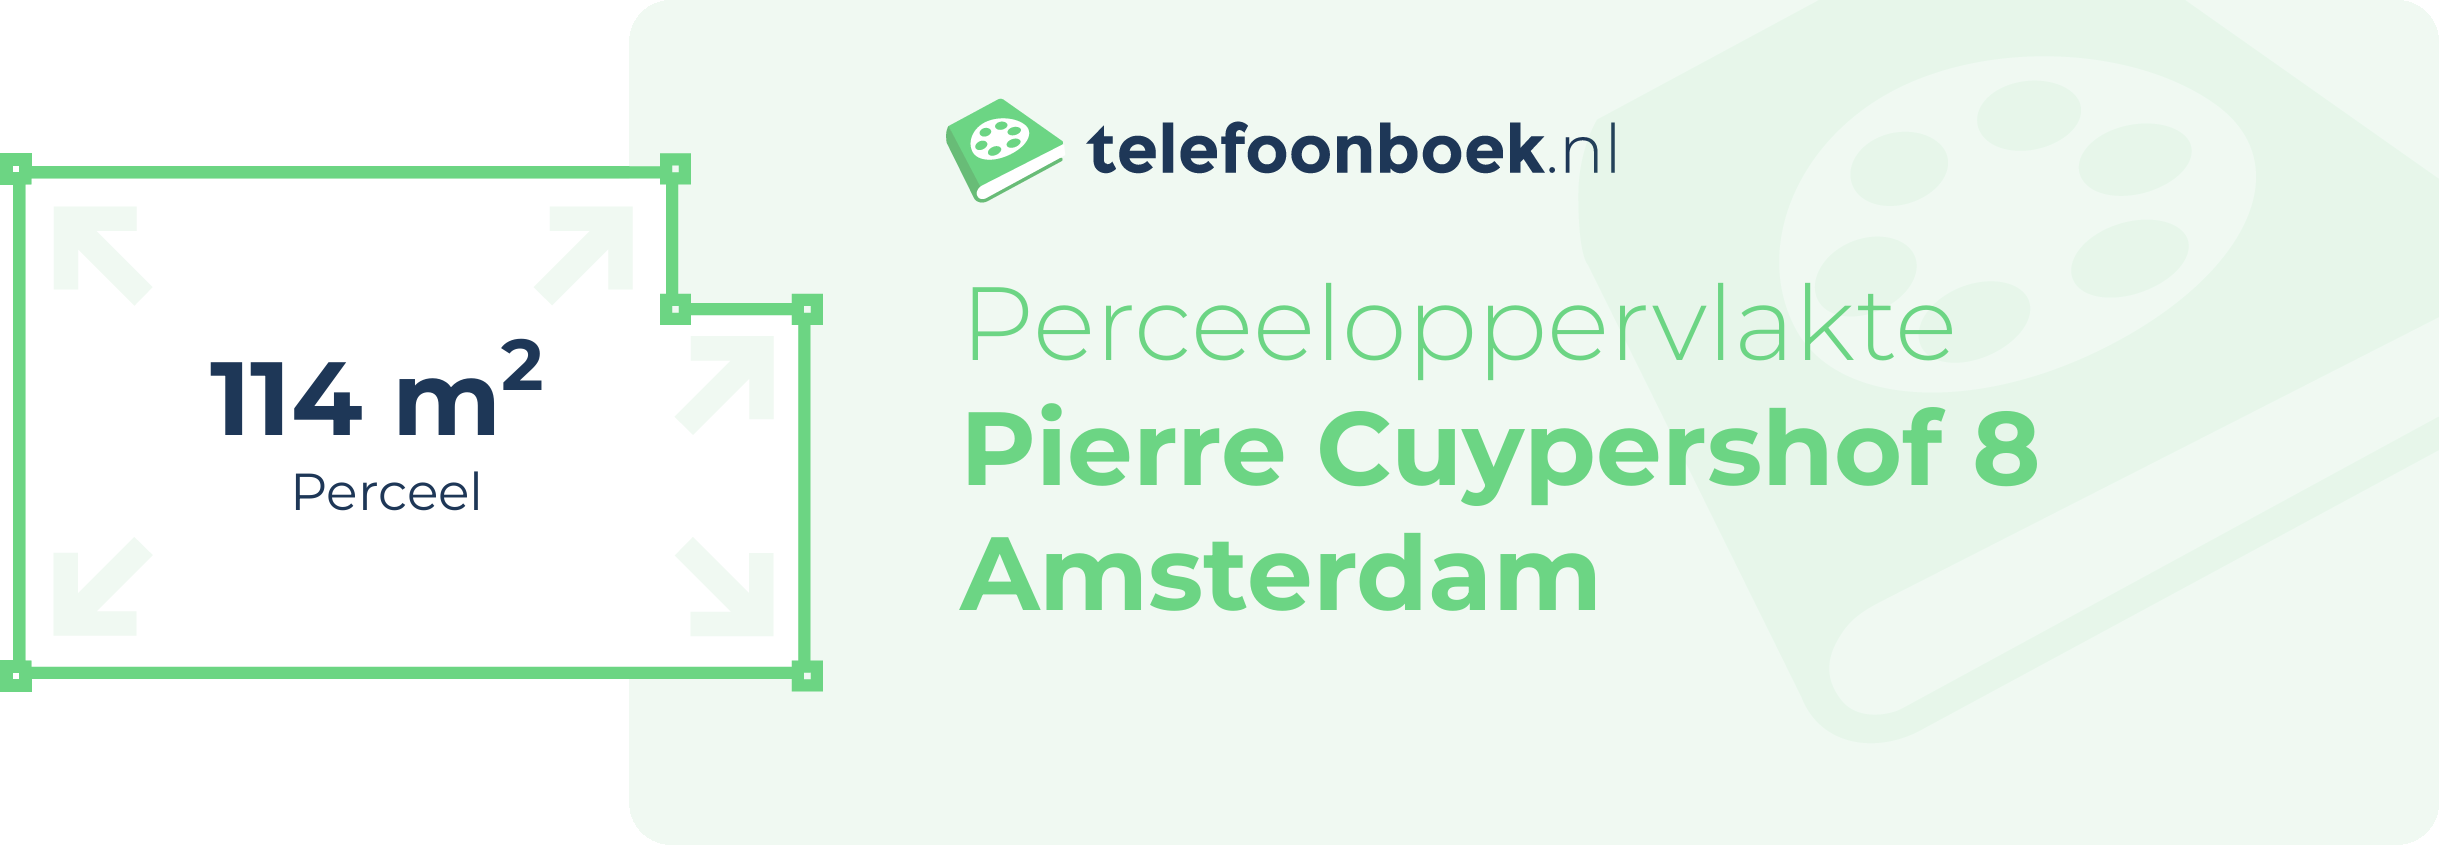 Perceeloppervlakte Pierre Cuypershof 8 Amsterdam